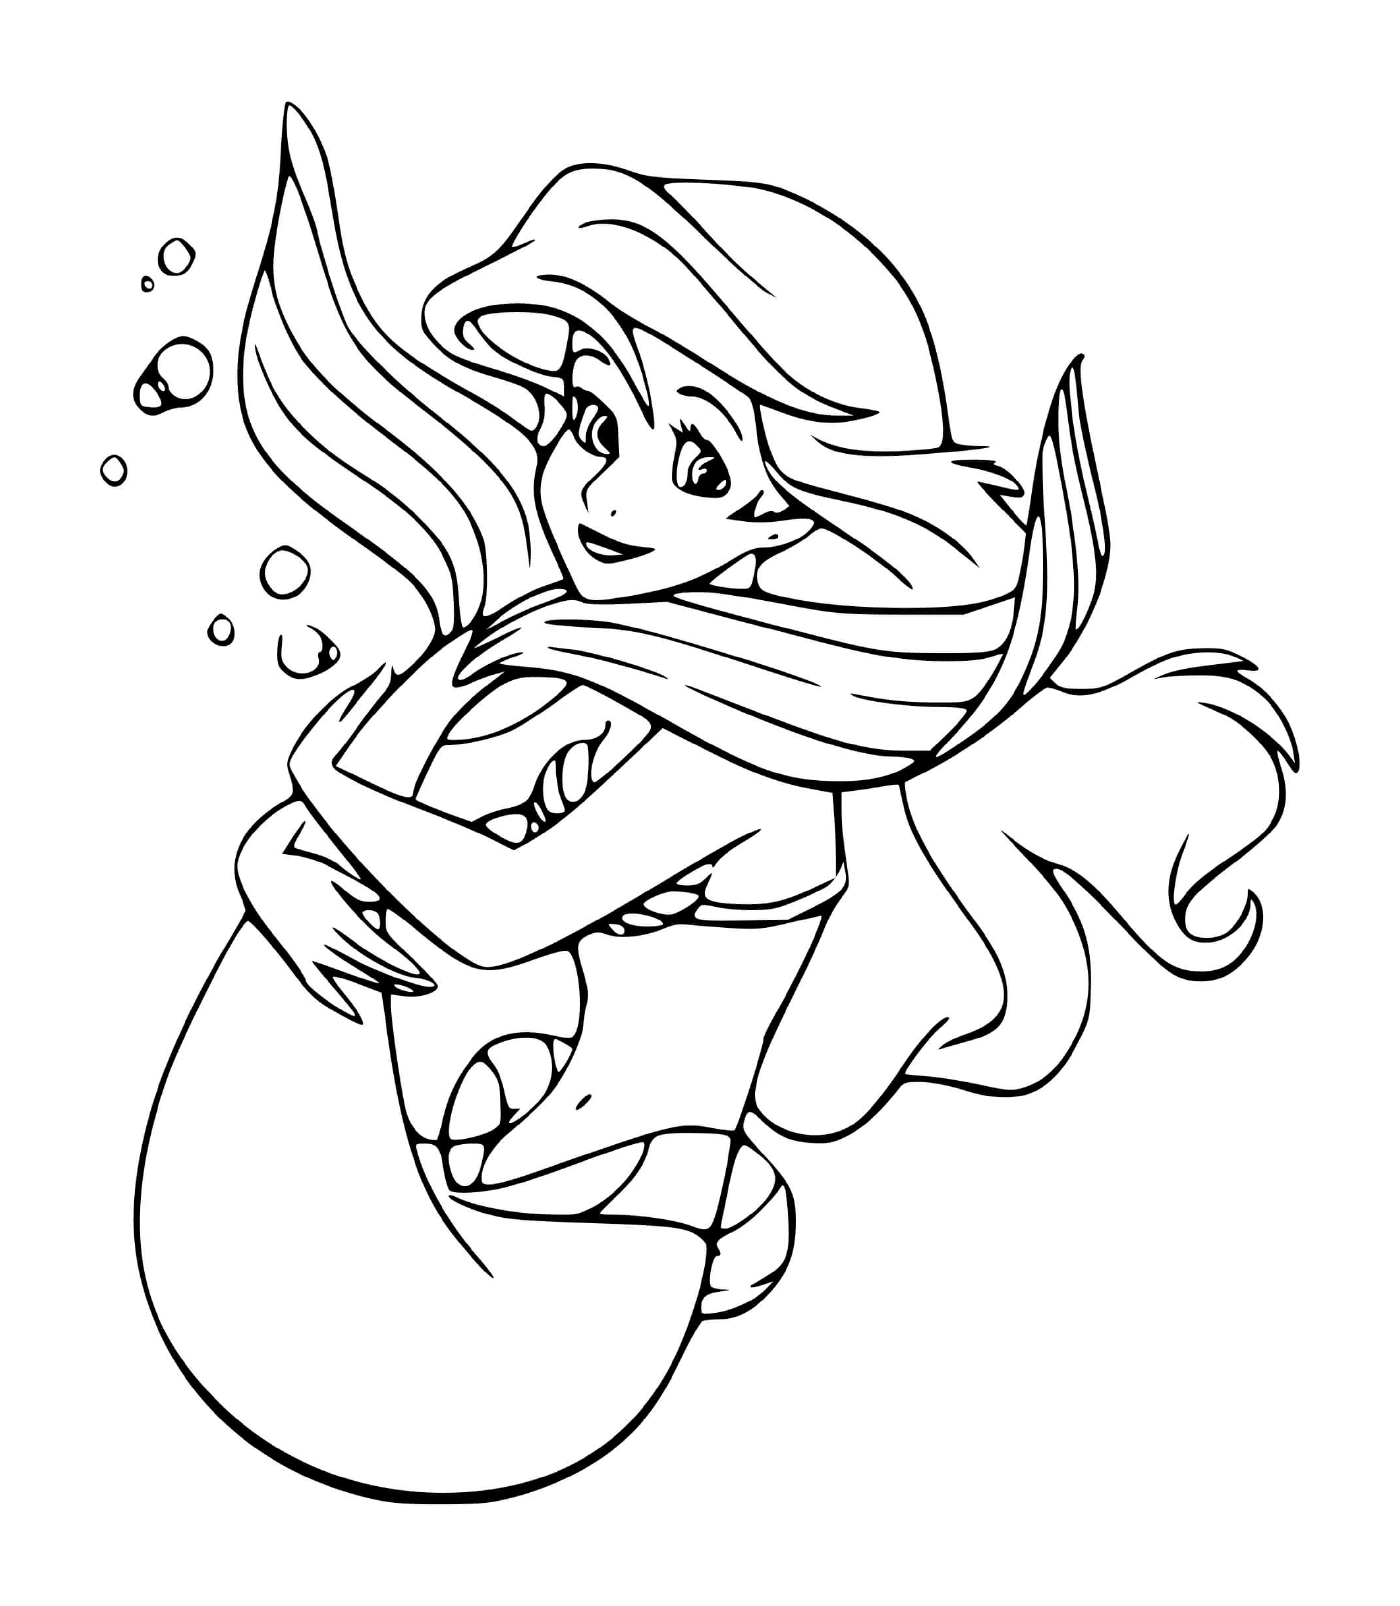  Ariel, una sirena avventurosa e curiosa del mondo 